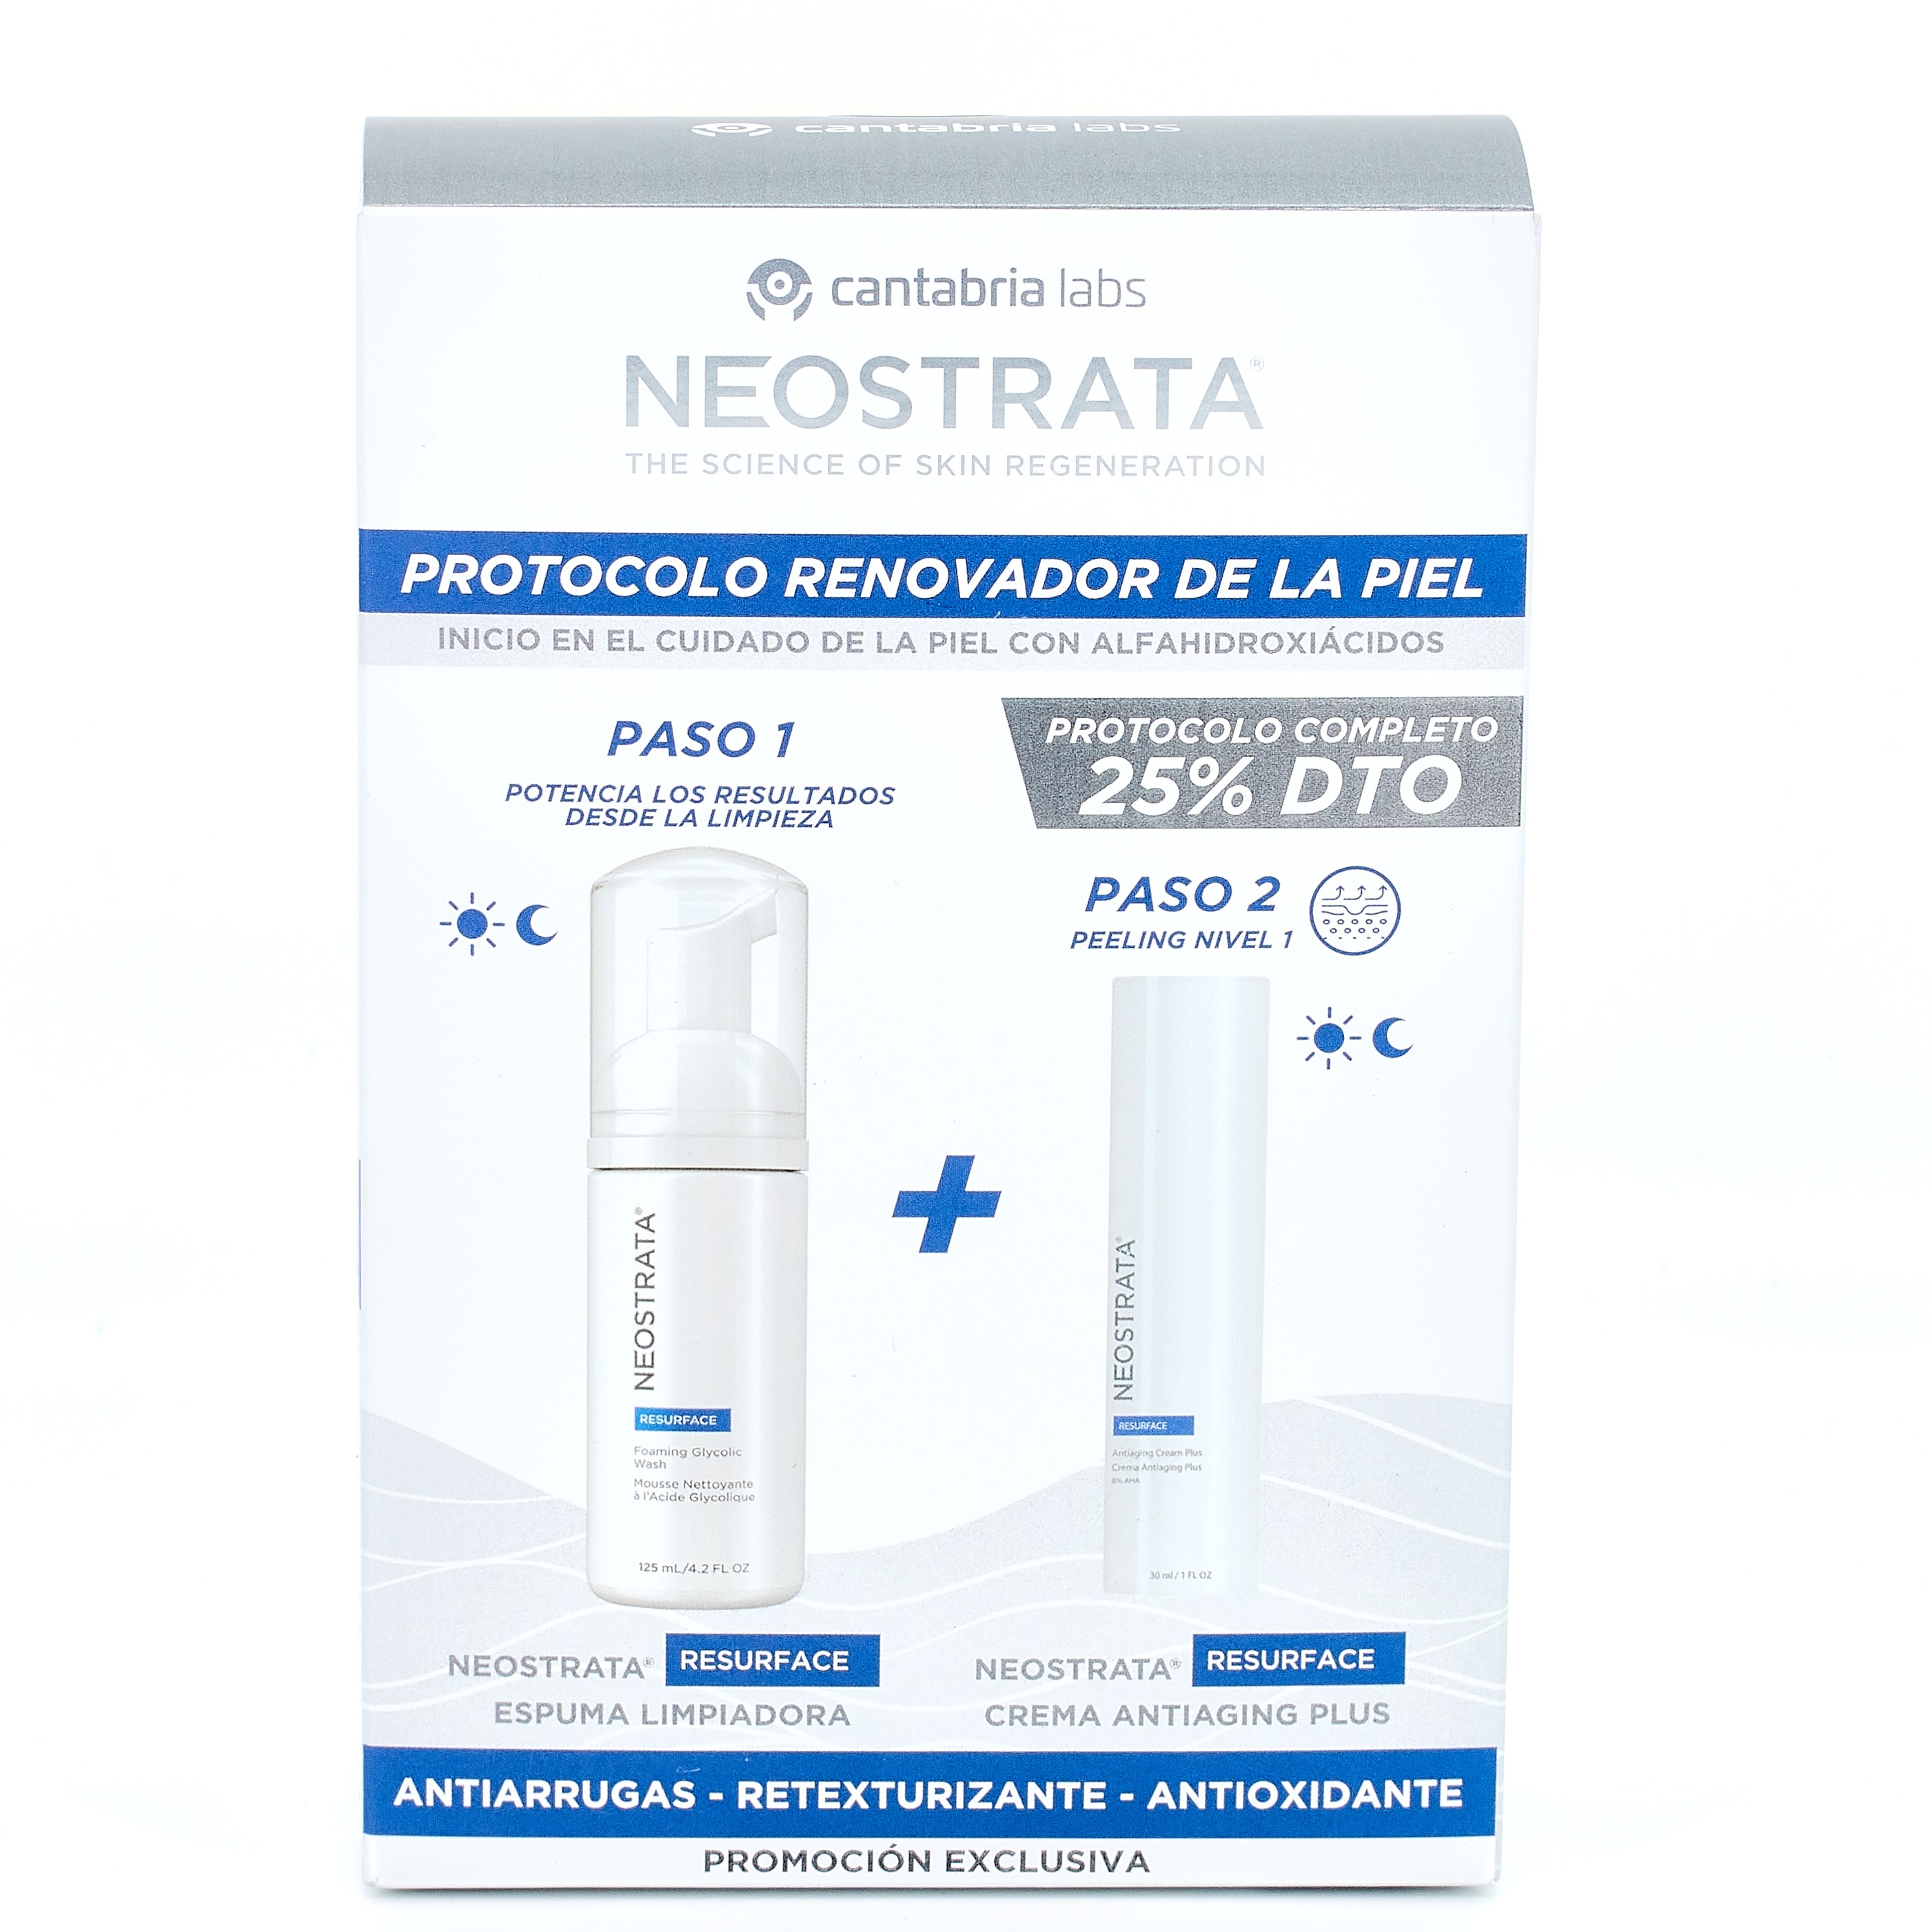 Neostrata Resurface Pack protocolo antioxidanteEOSTRATA RESURFACE PACK PROTOCOLO ANTIOXIDANTE